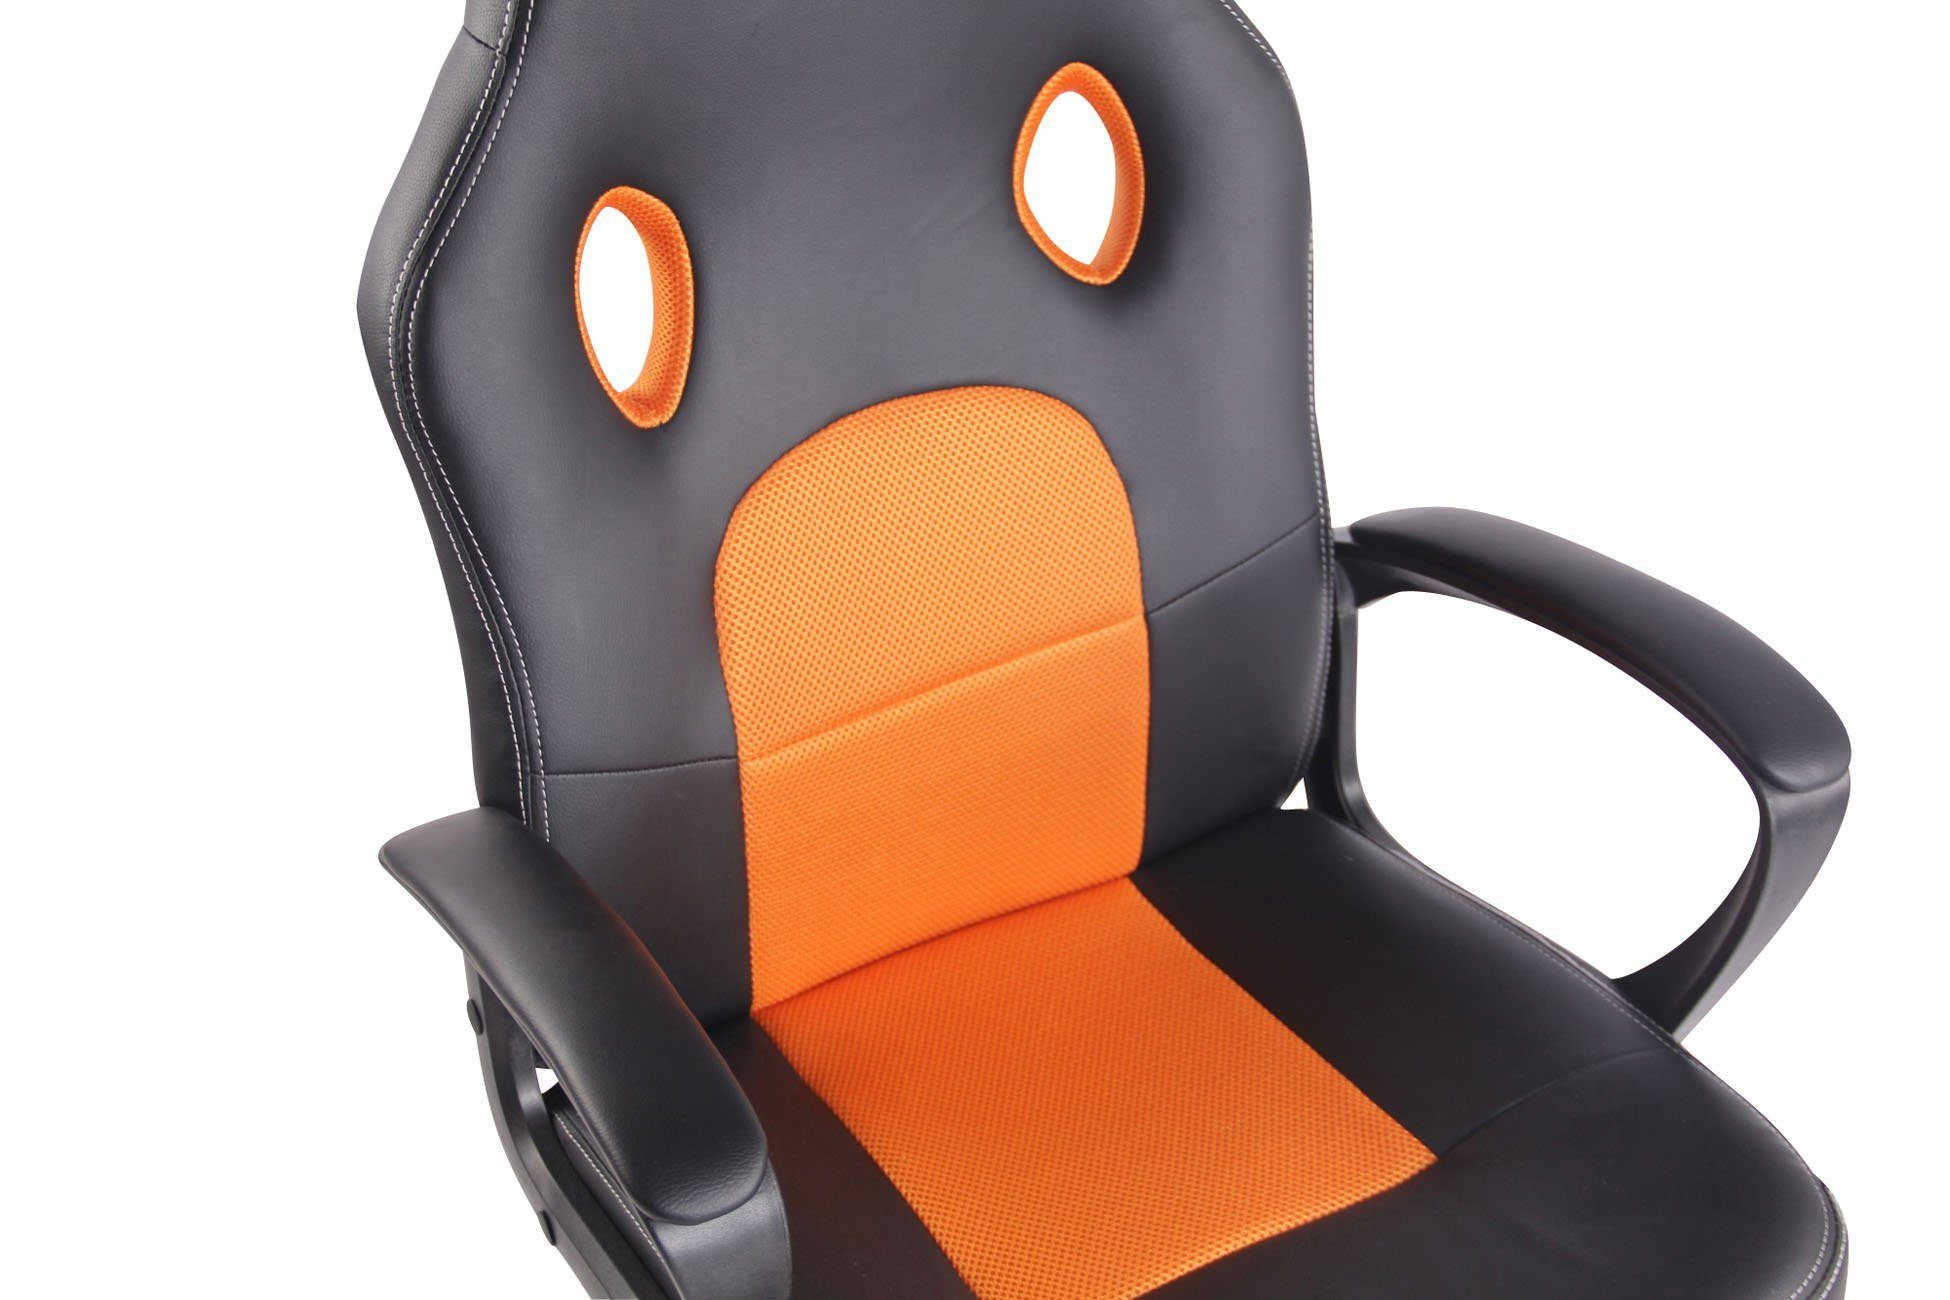 CLP Gaming Chair Elbing, höhenverstellbar schwarz/orange und drehbar